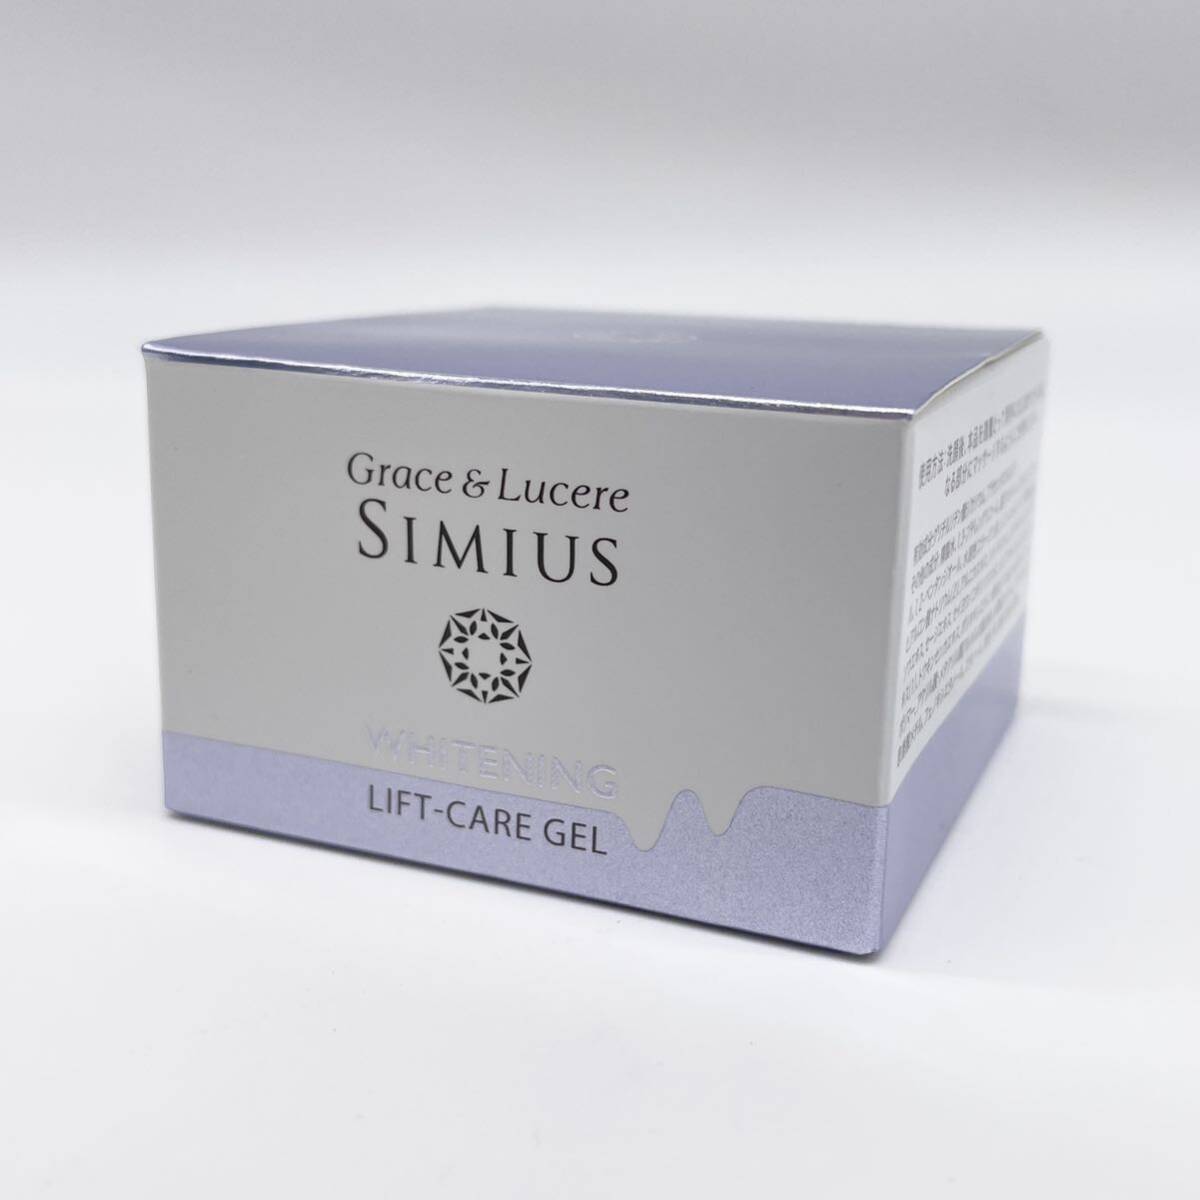 《未使用品》SIMIUS シミウス ホワイトニングリフトケアジェル A75 グレースアンドルケレシミウス 60g